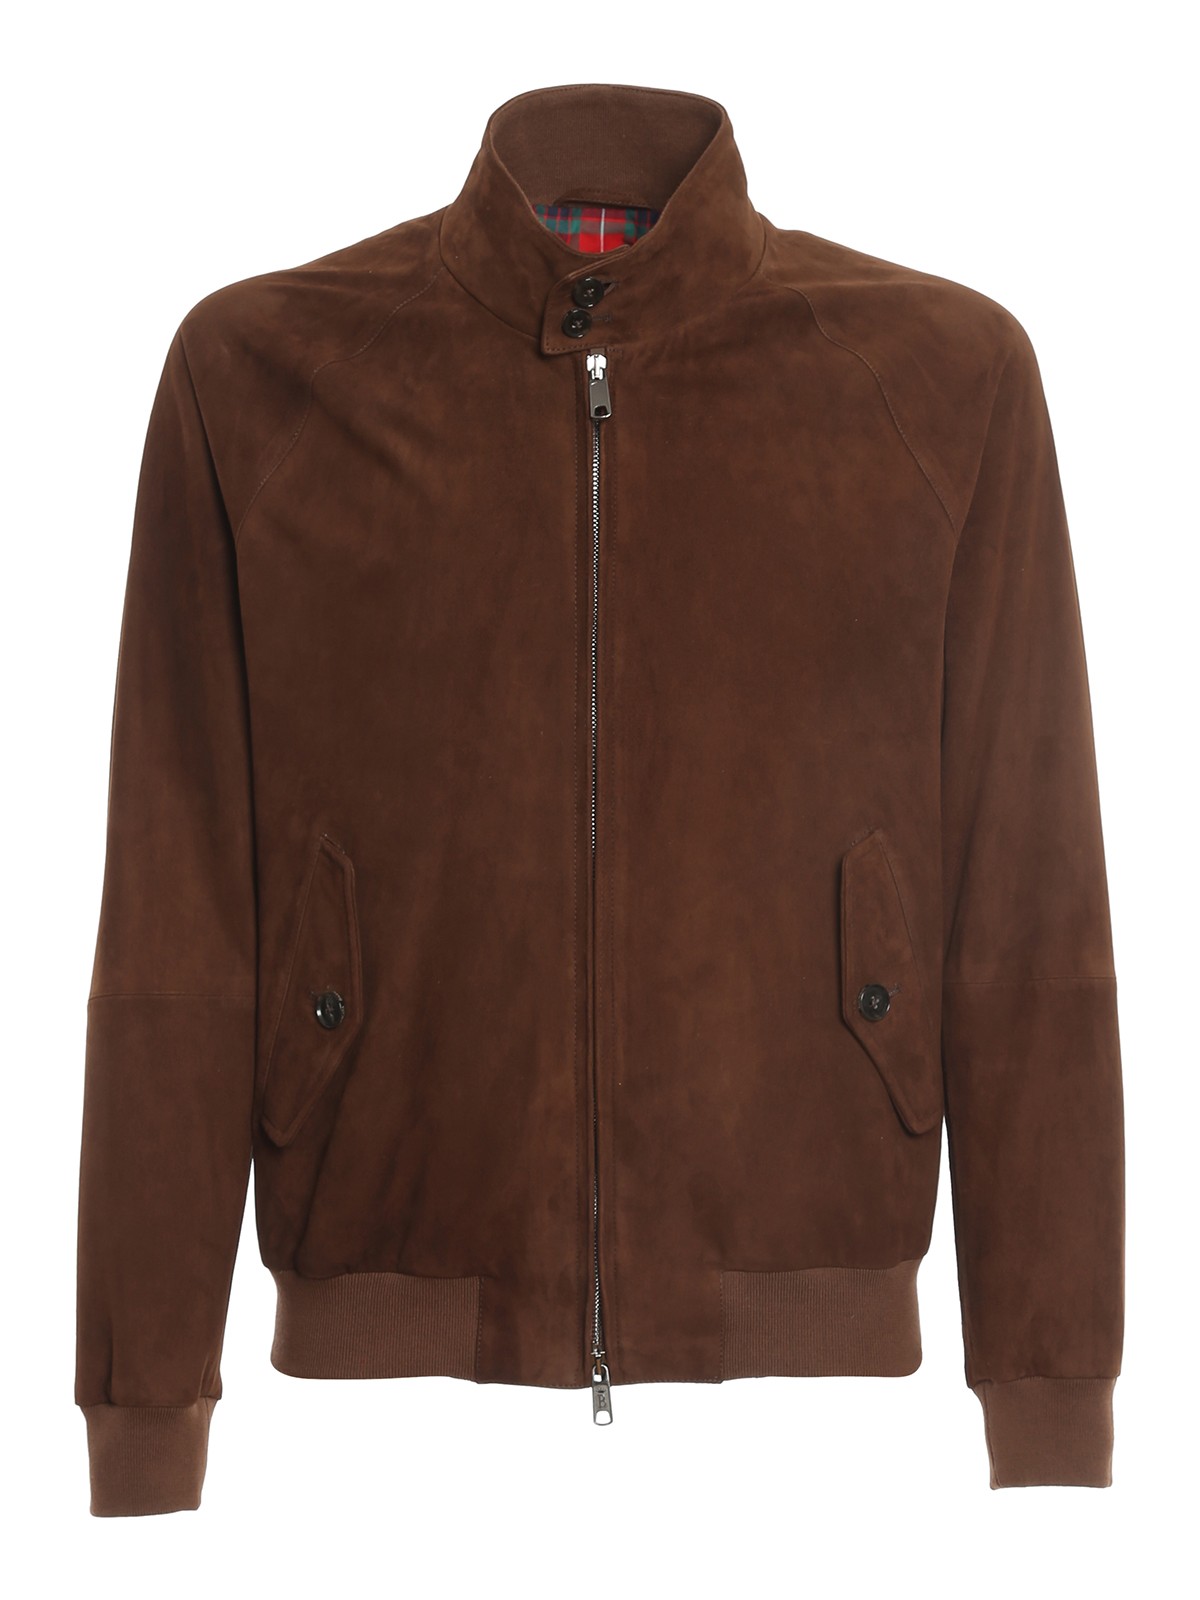 Leather jacket Baracuta - G9 suede jacket - BRCPS0573UT1132711 | iKRIX.com